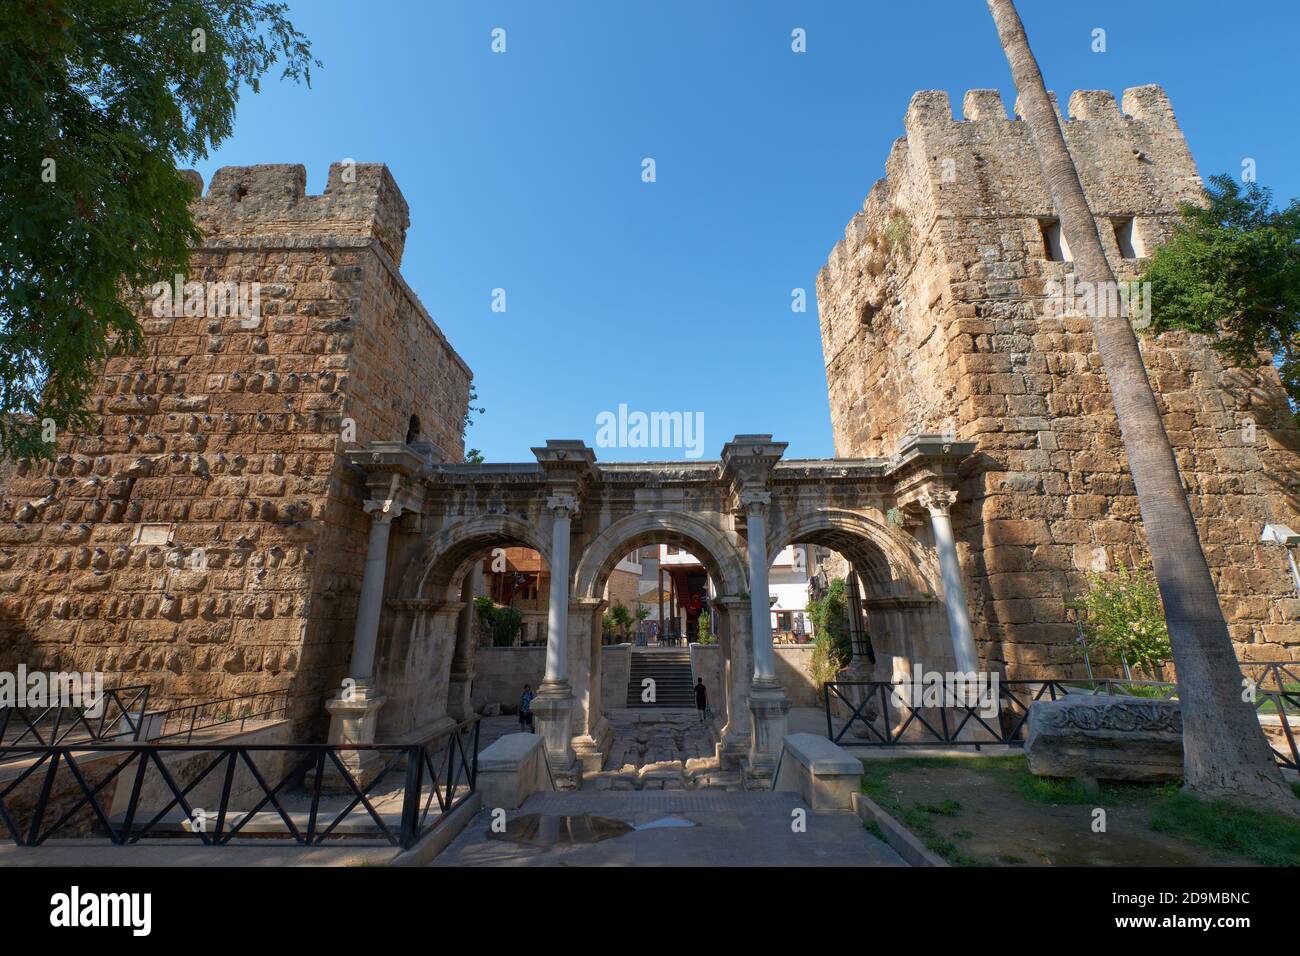 La porte d'Hadrien arches triomphales dans la vieille ville d'Antalya, Turquie Banque D'Images